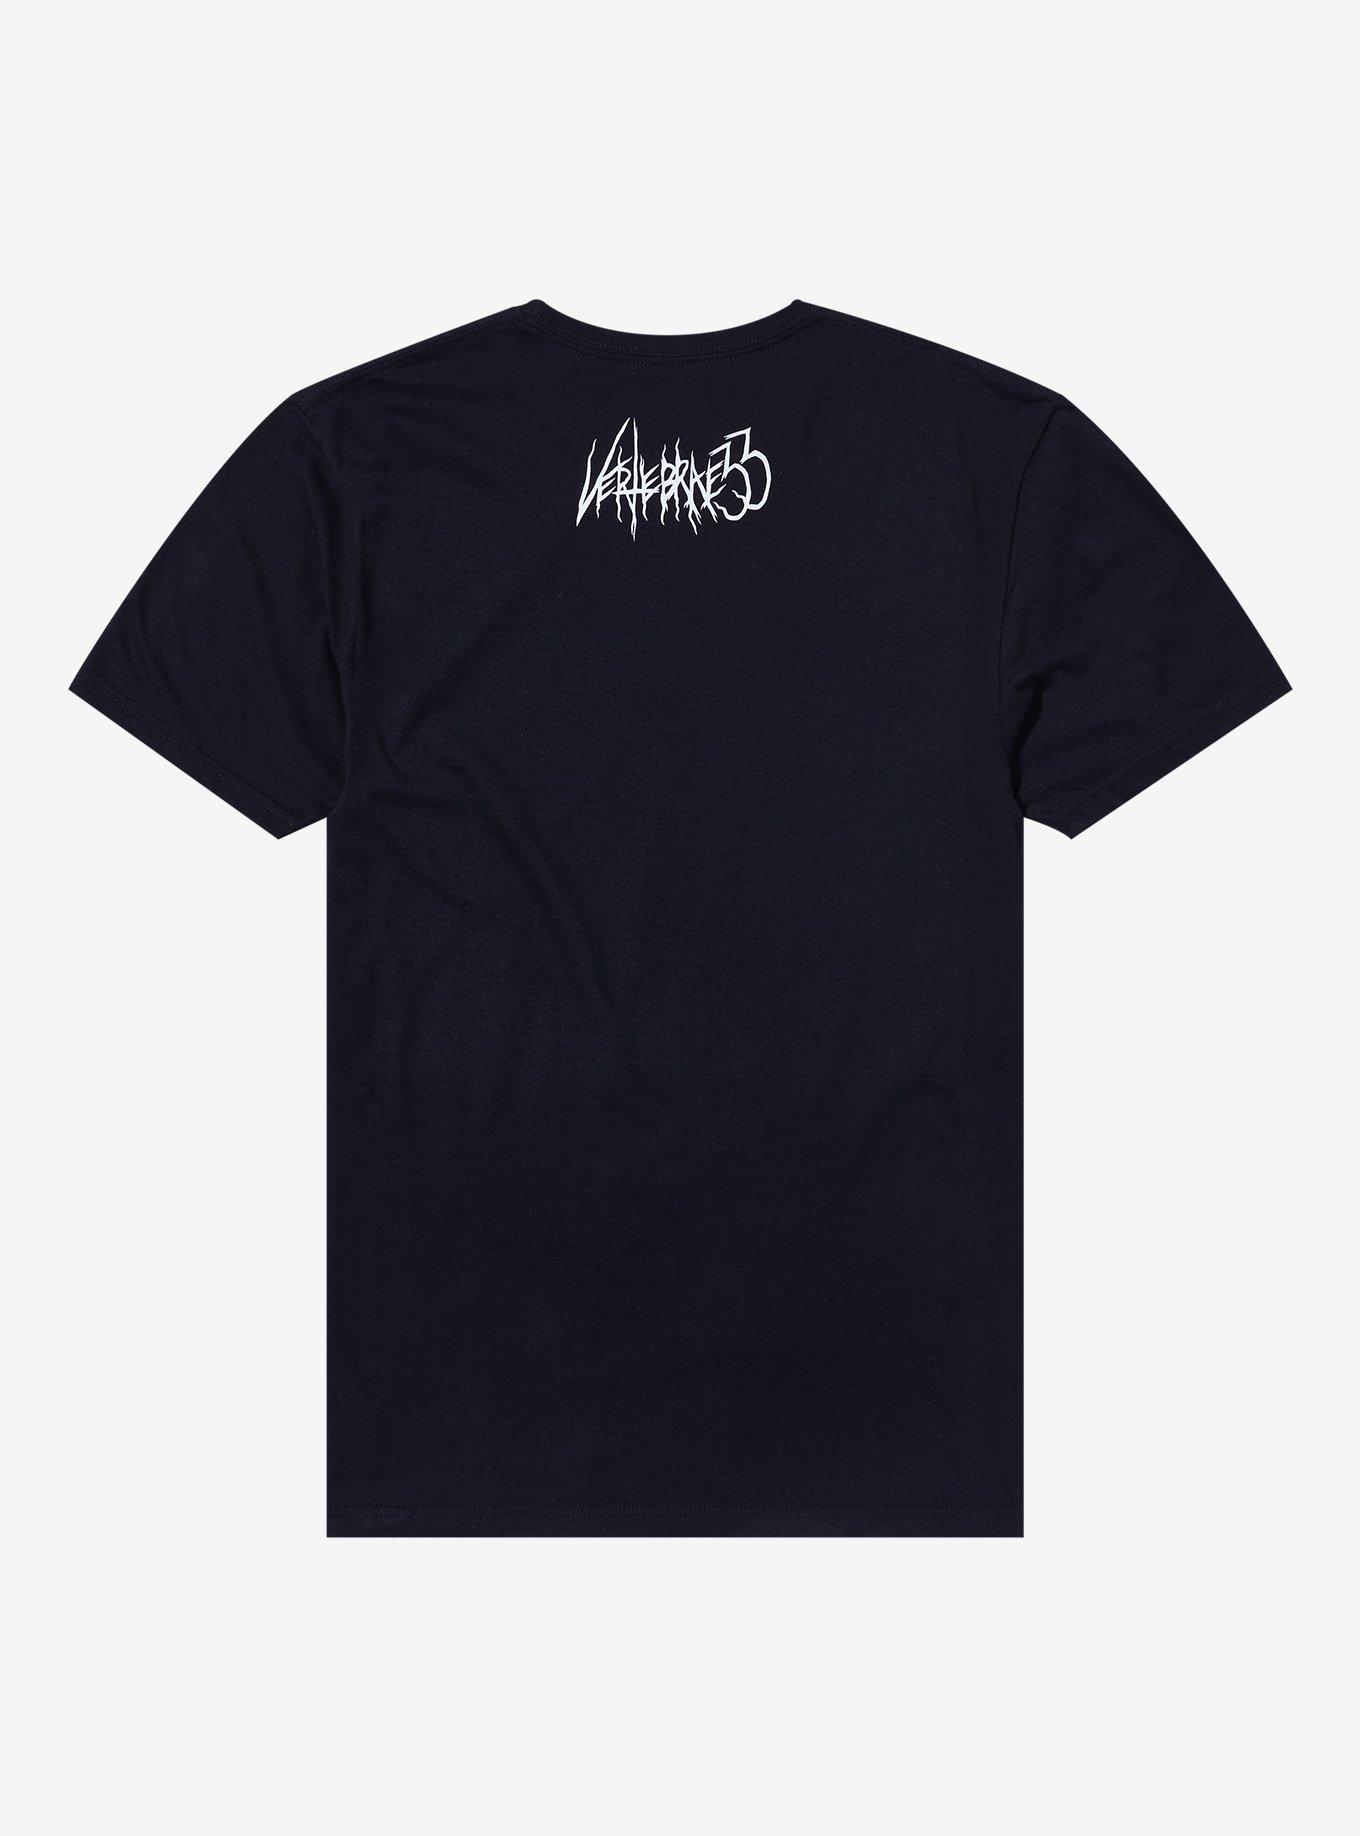 Demon Cat T-Shirt By Vertebrae33, BLACK, alternate